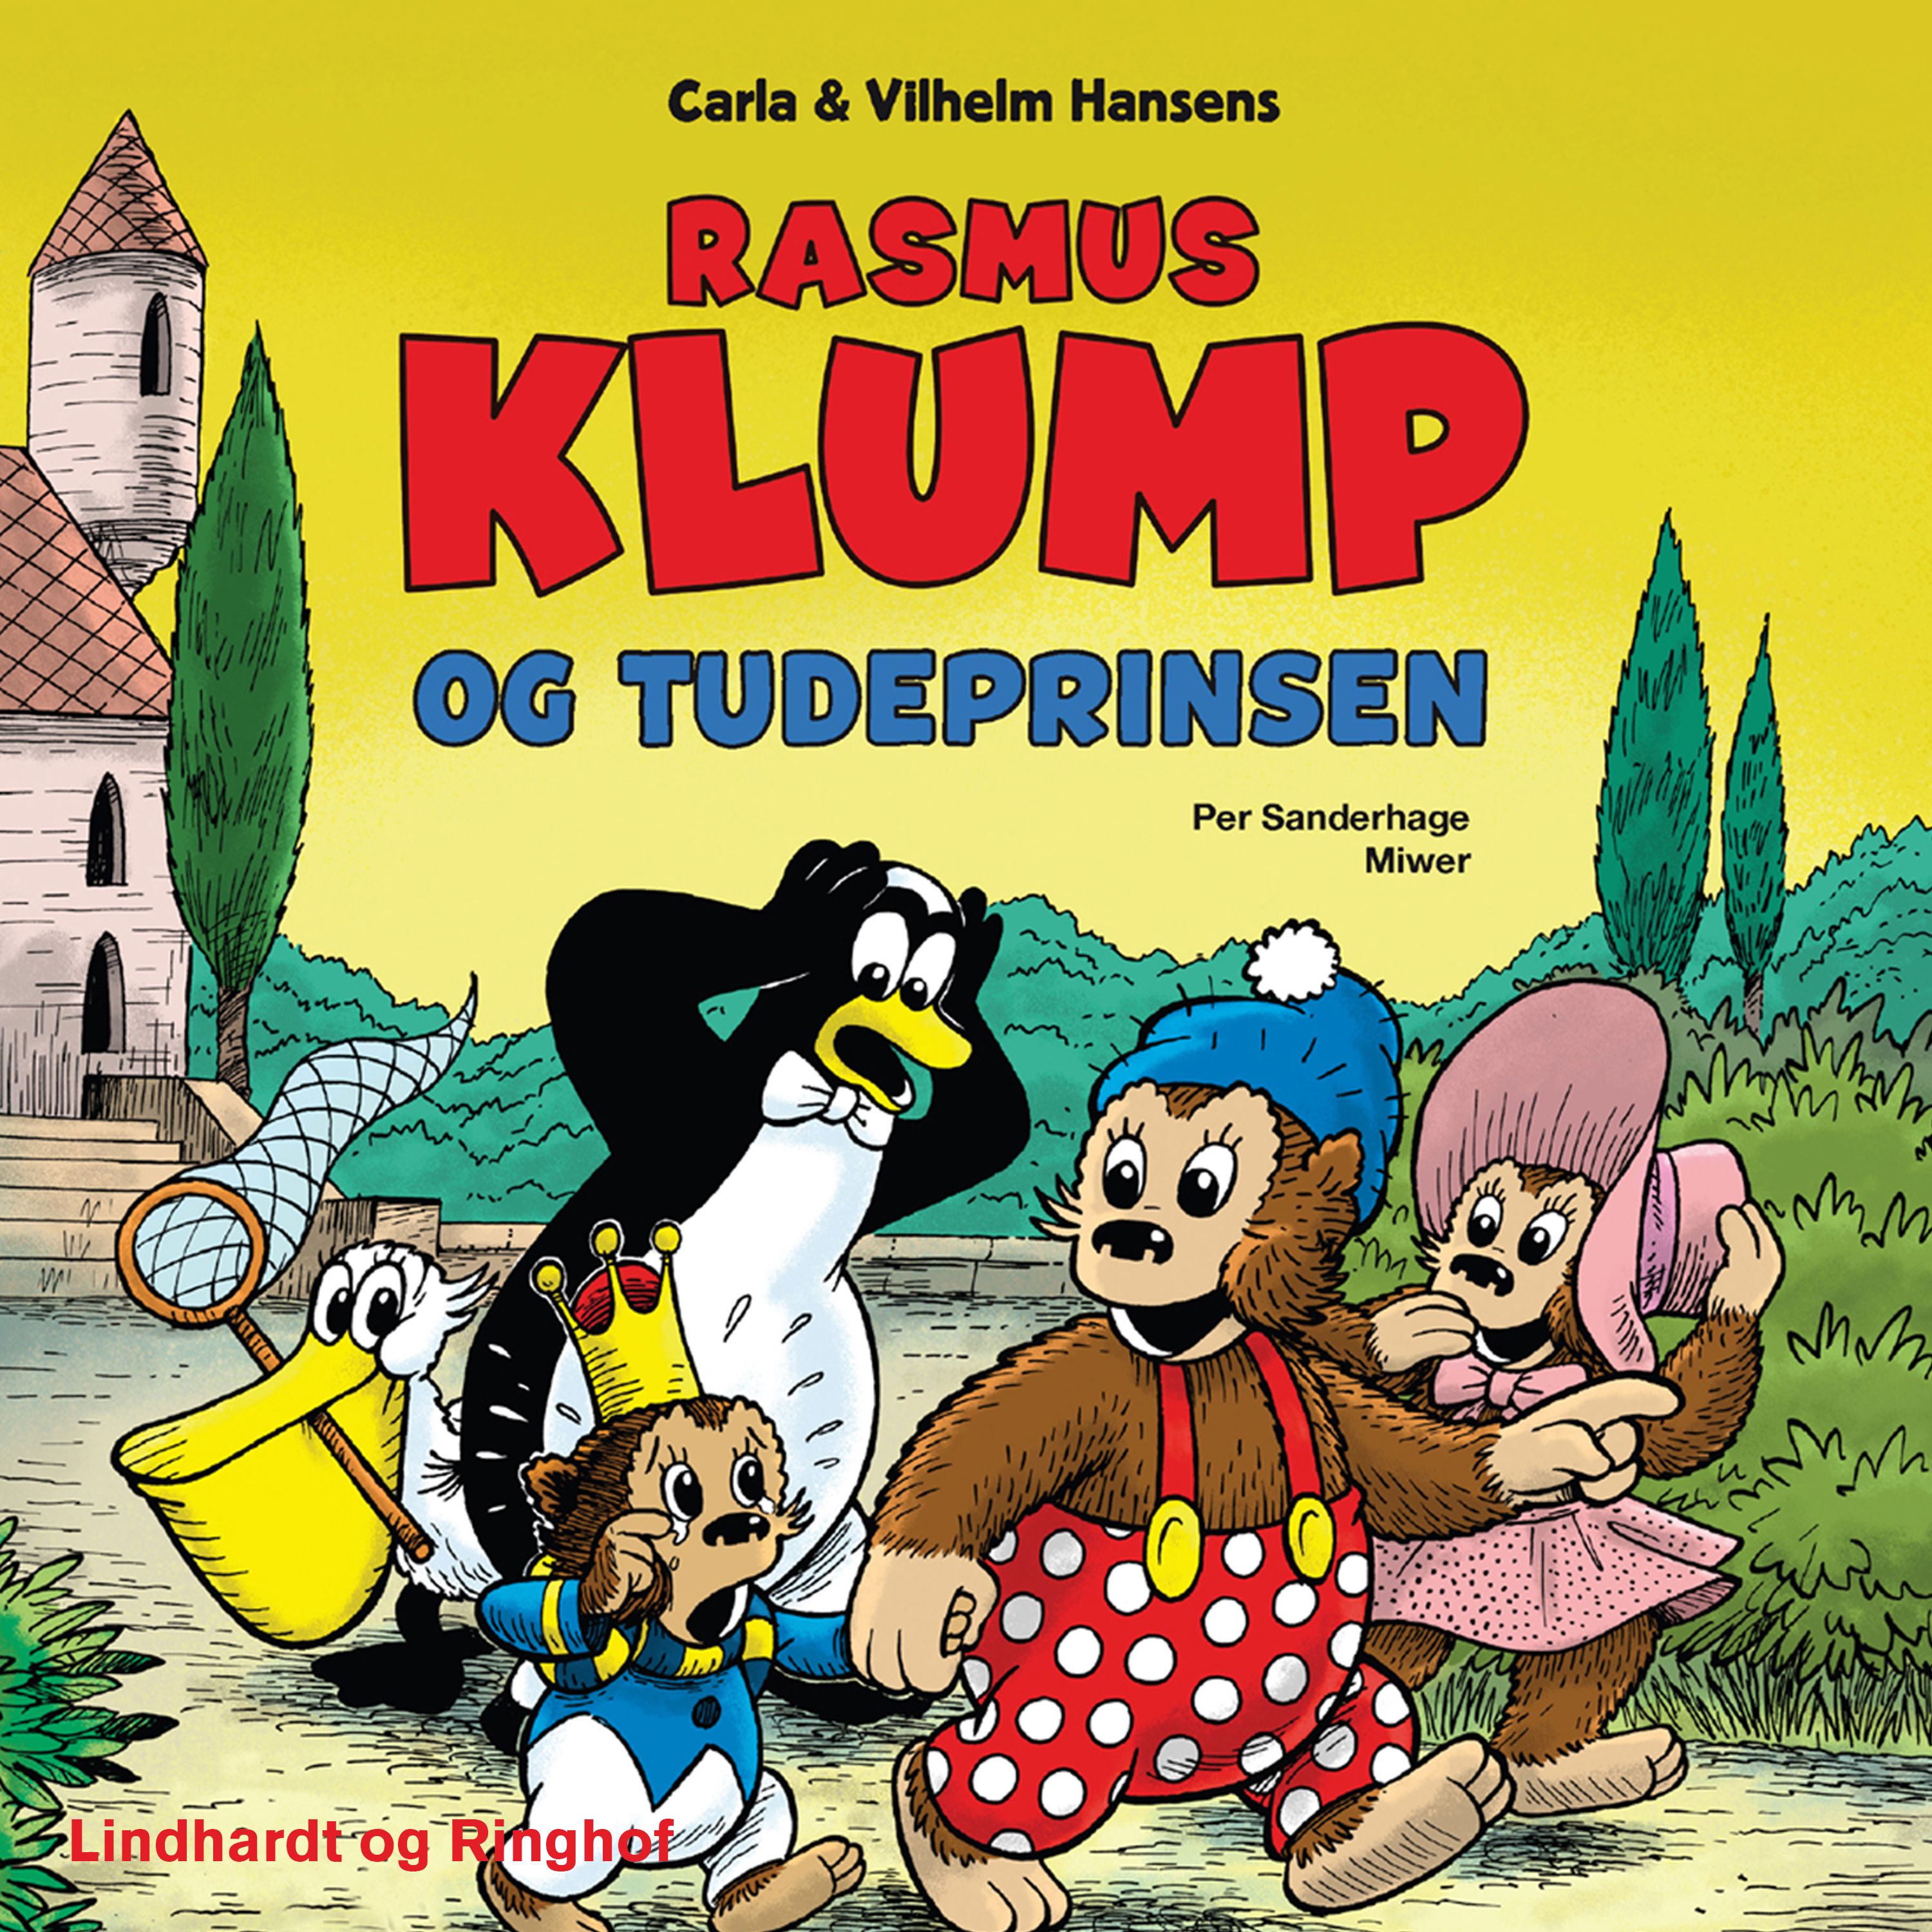 Rasmus Klump og tudeprinsen, lydbog af Per Sanderhage